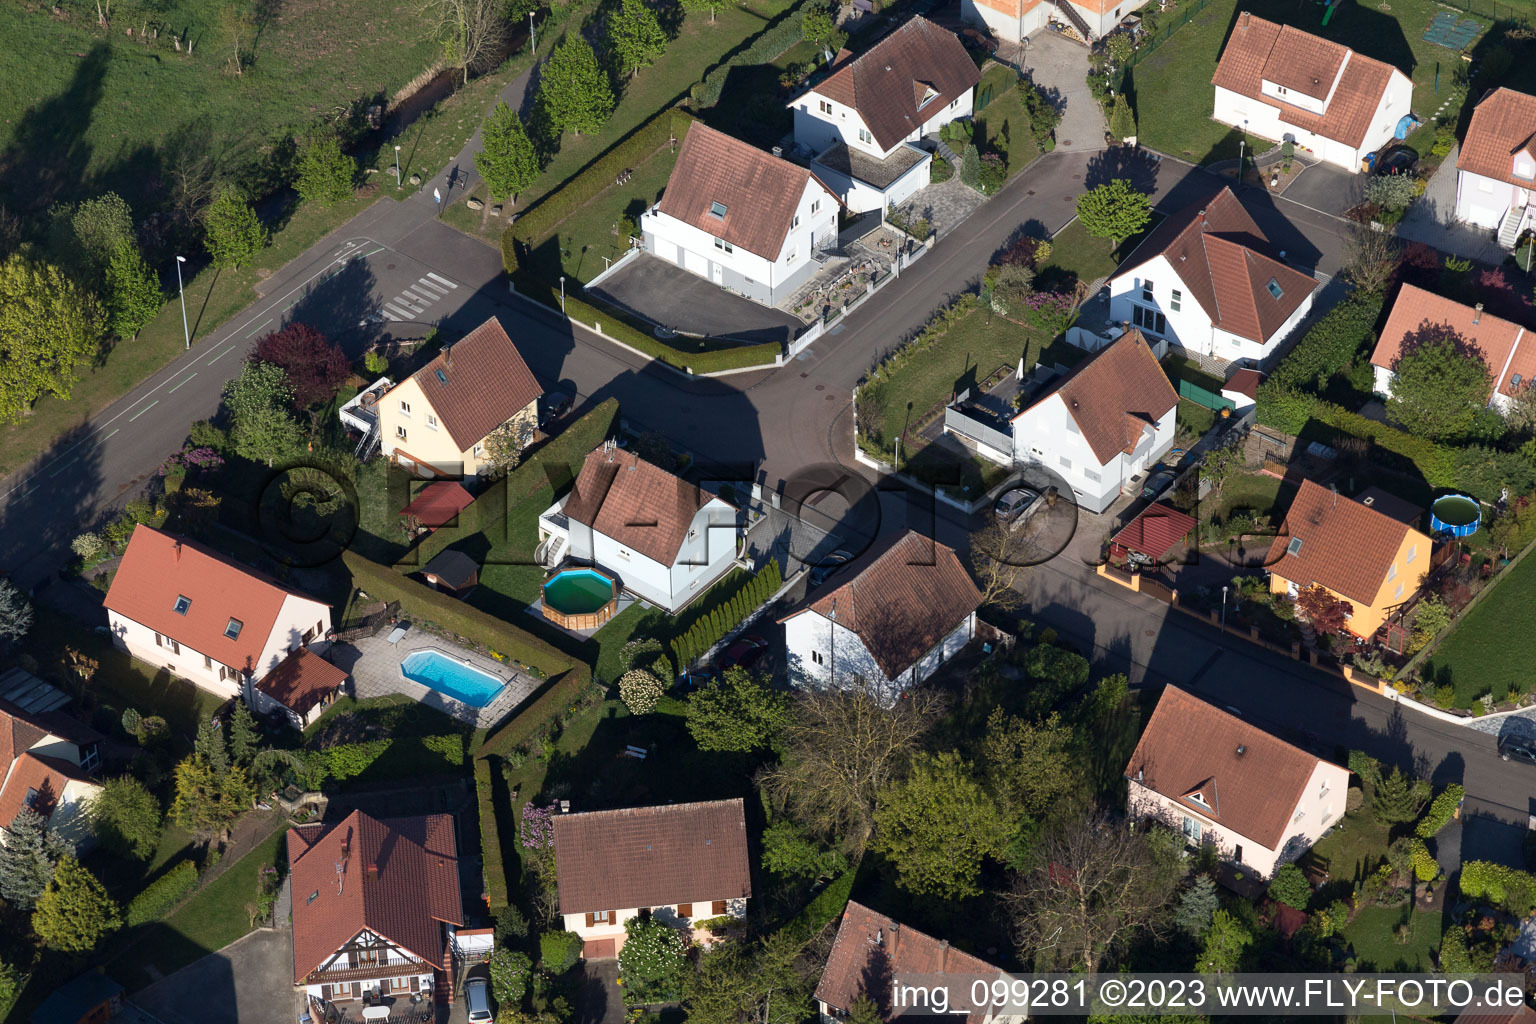 Altenstadt im Bundesland Bas-Rhin, Frankreich von einer Drohne aus